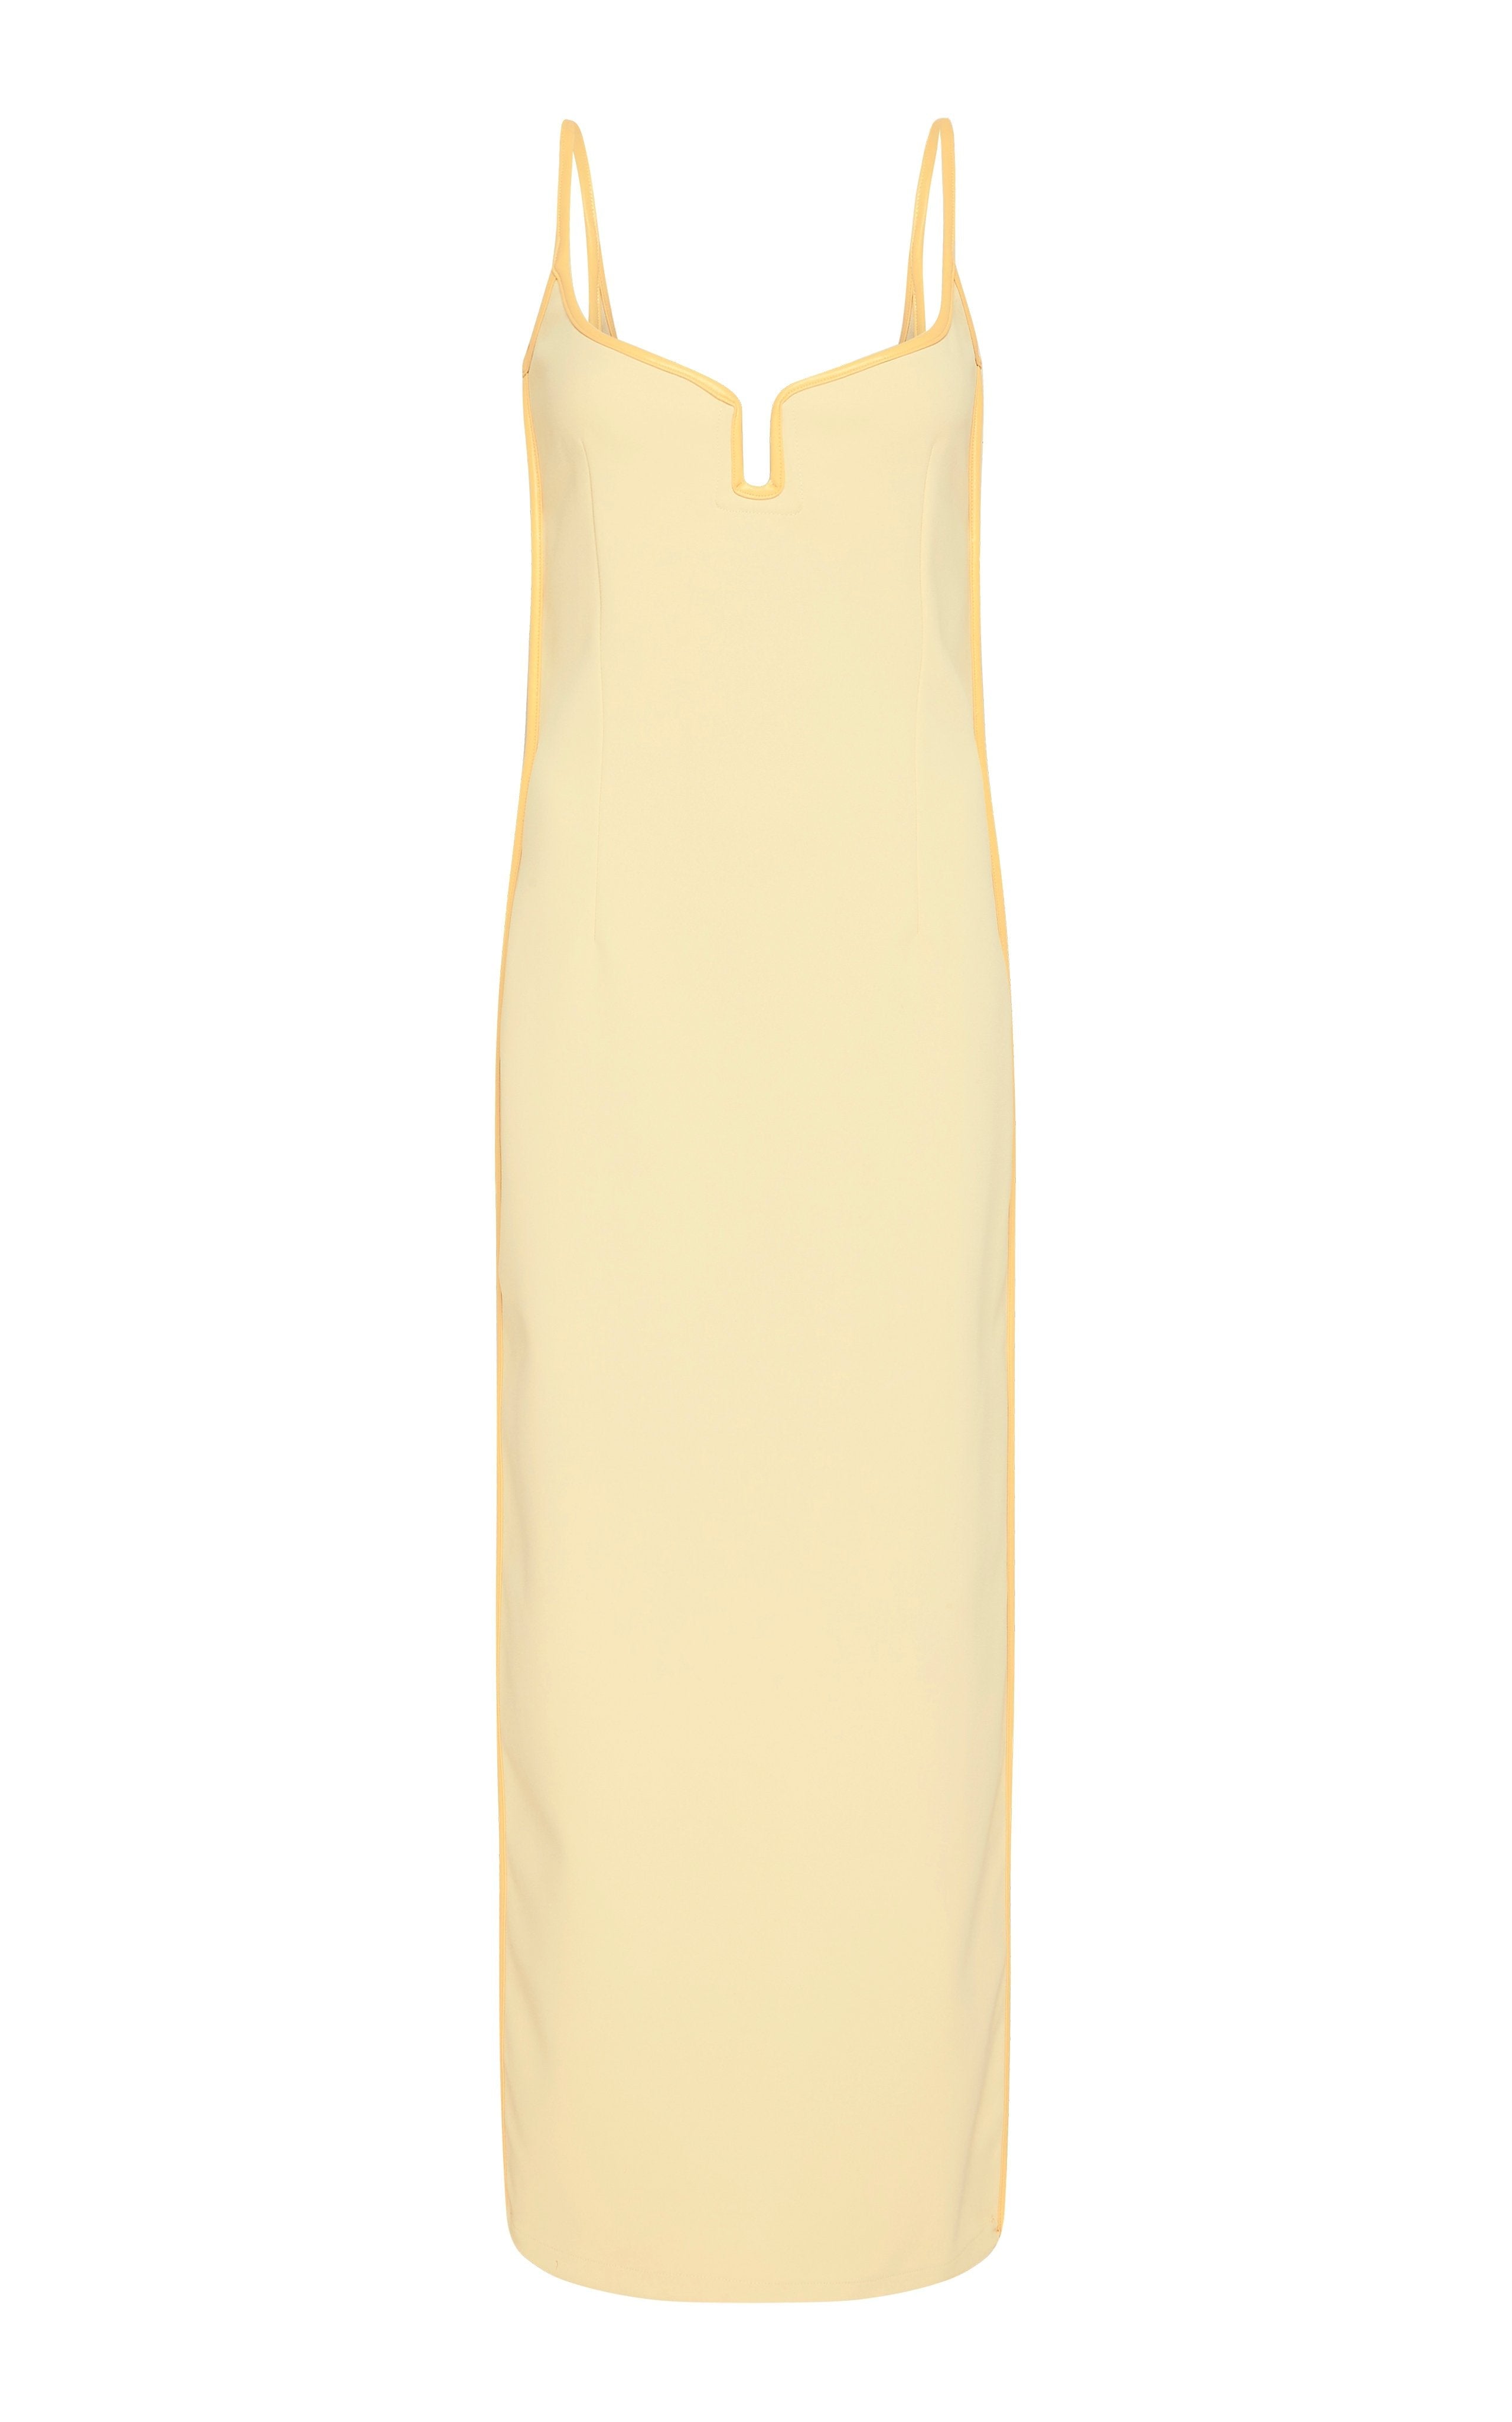 Marlo Dress in Daffy Yellow (8) - Paris Georgia